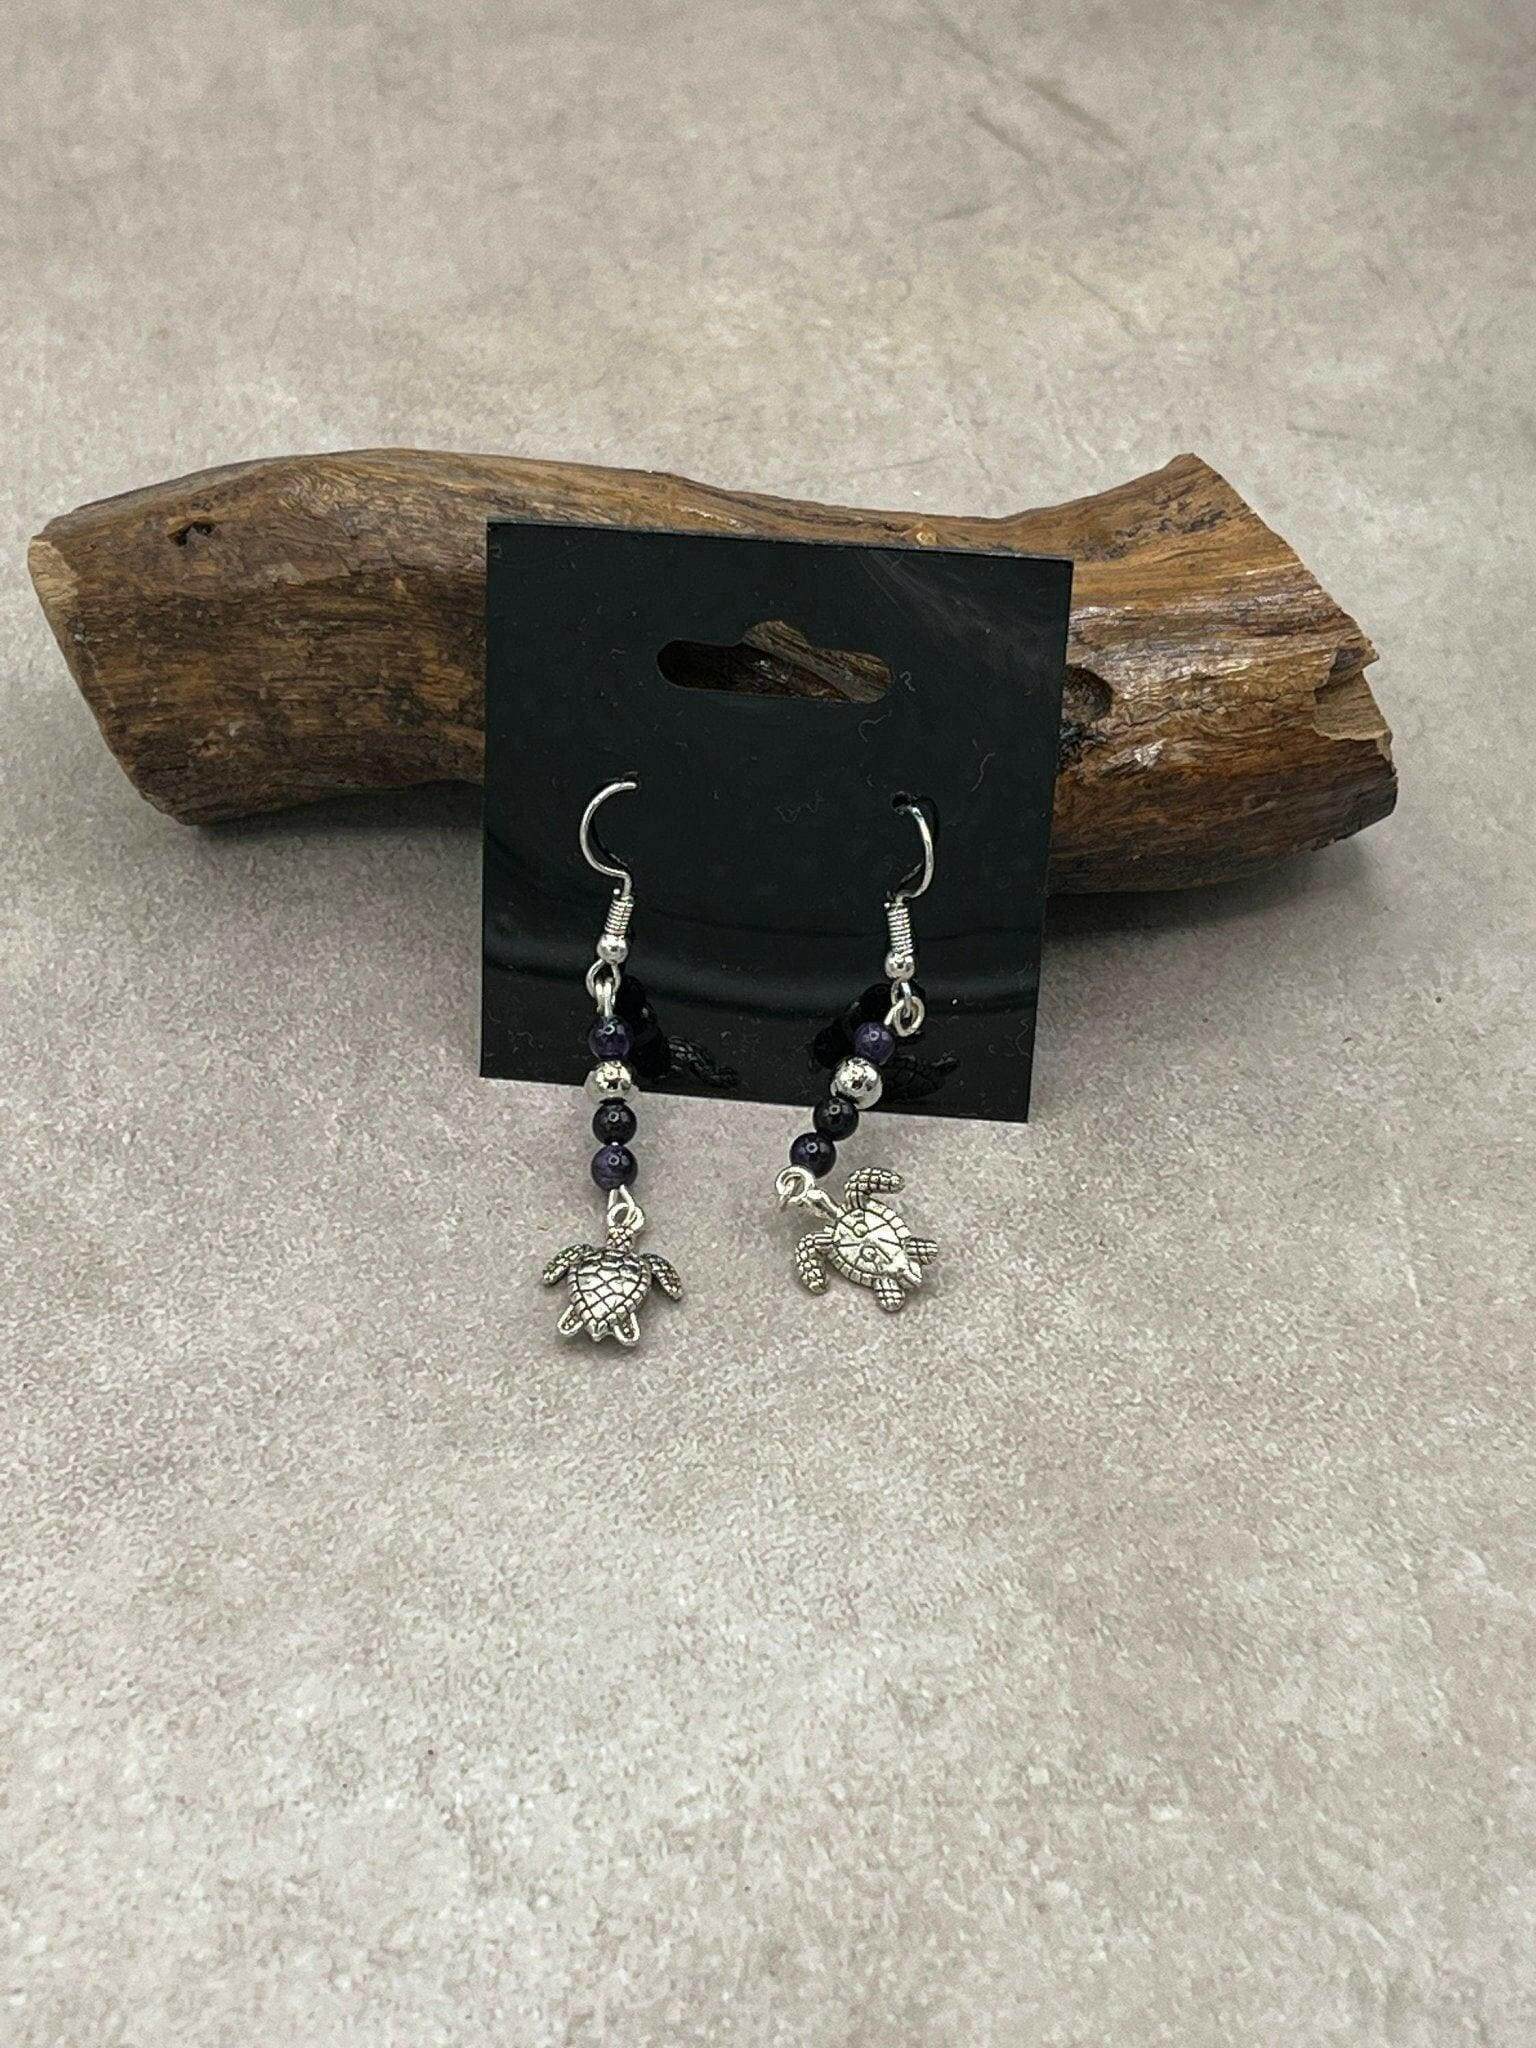 Bec Sue Jewelry Shop earrings purple / turtle Turtle Jewelry, Turtle Earrings,  Turtle Jewelry Earrings, Sea Turtle Earrings Tags 520